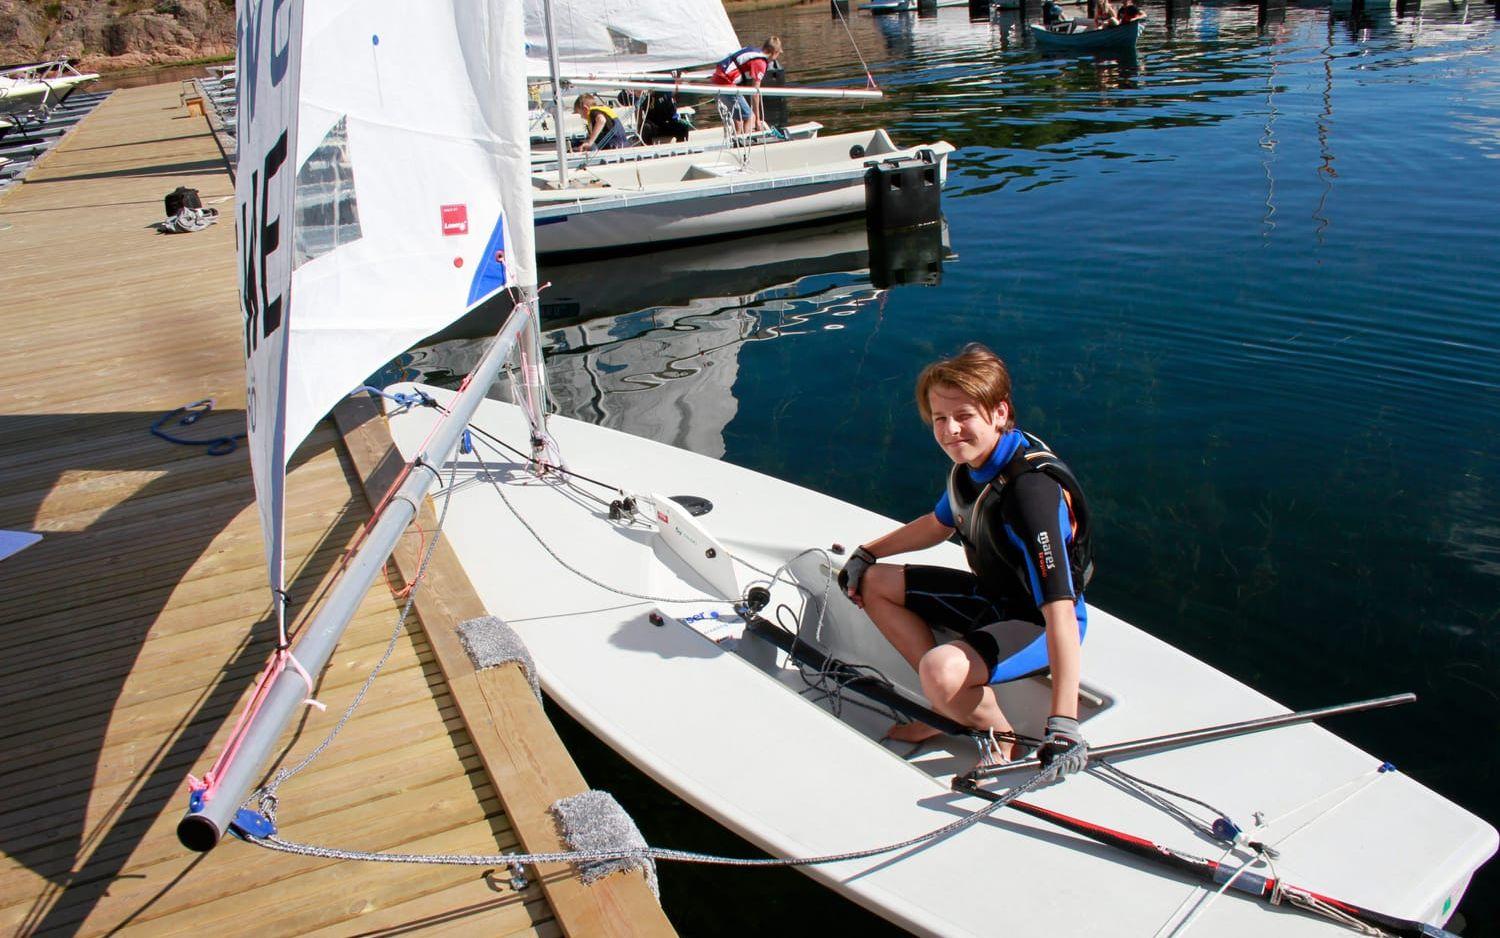 14-årige Eddie Stalfors från Fasseröd har seglat i fyra år. Han har en egen Laserjolle ihop med sin bror Love.